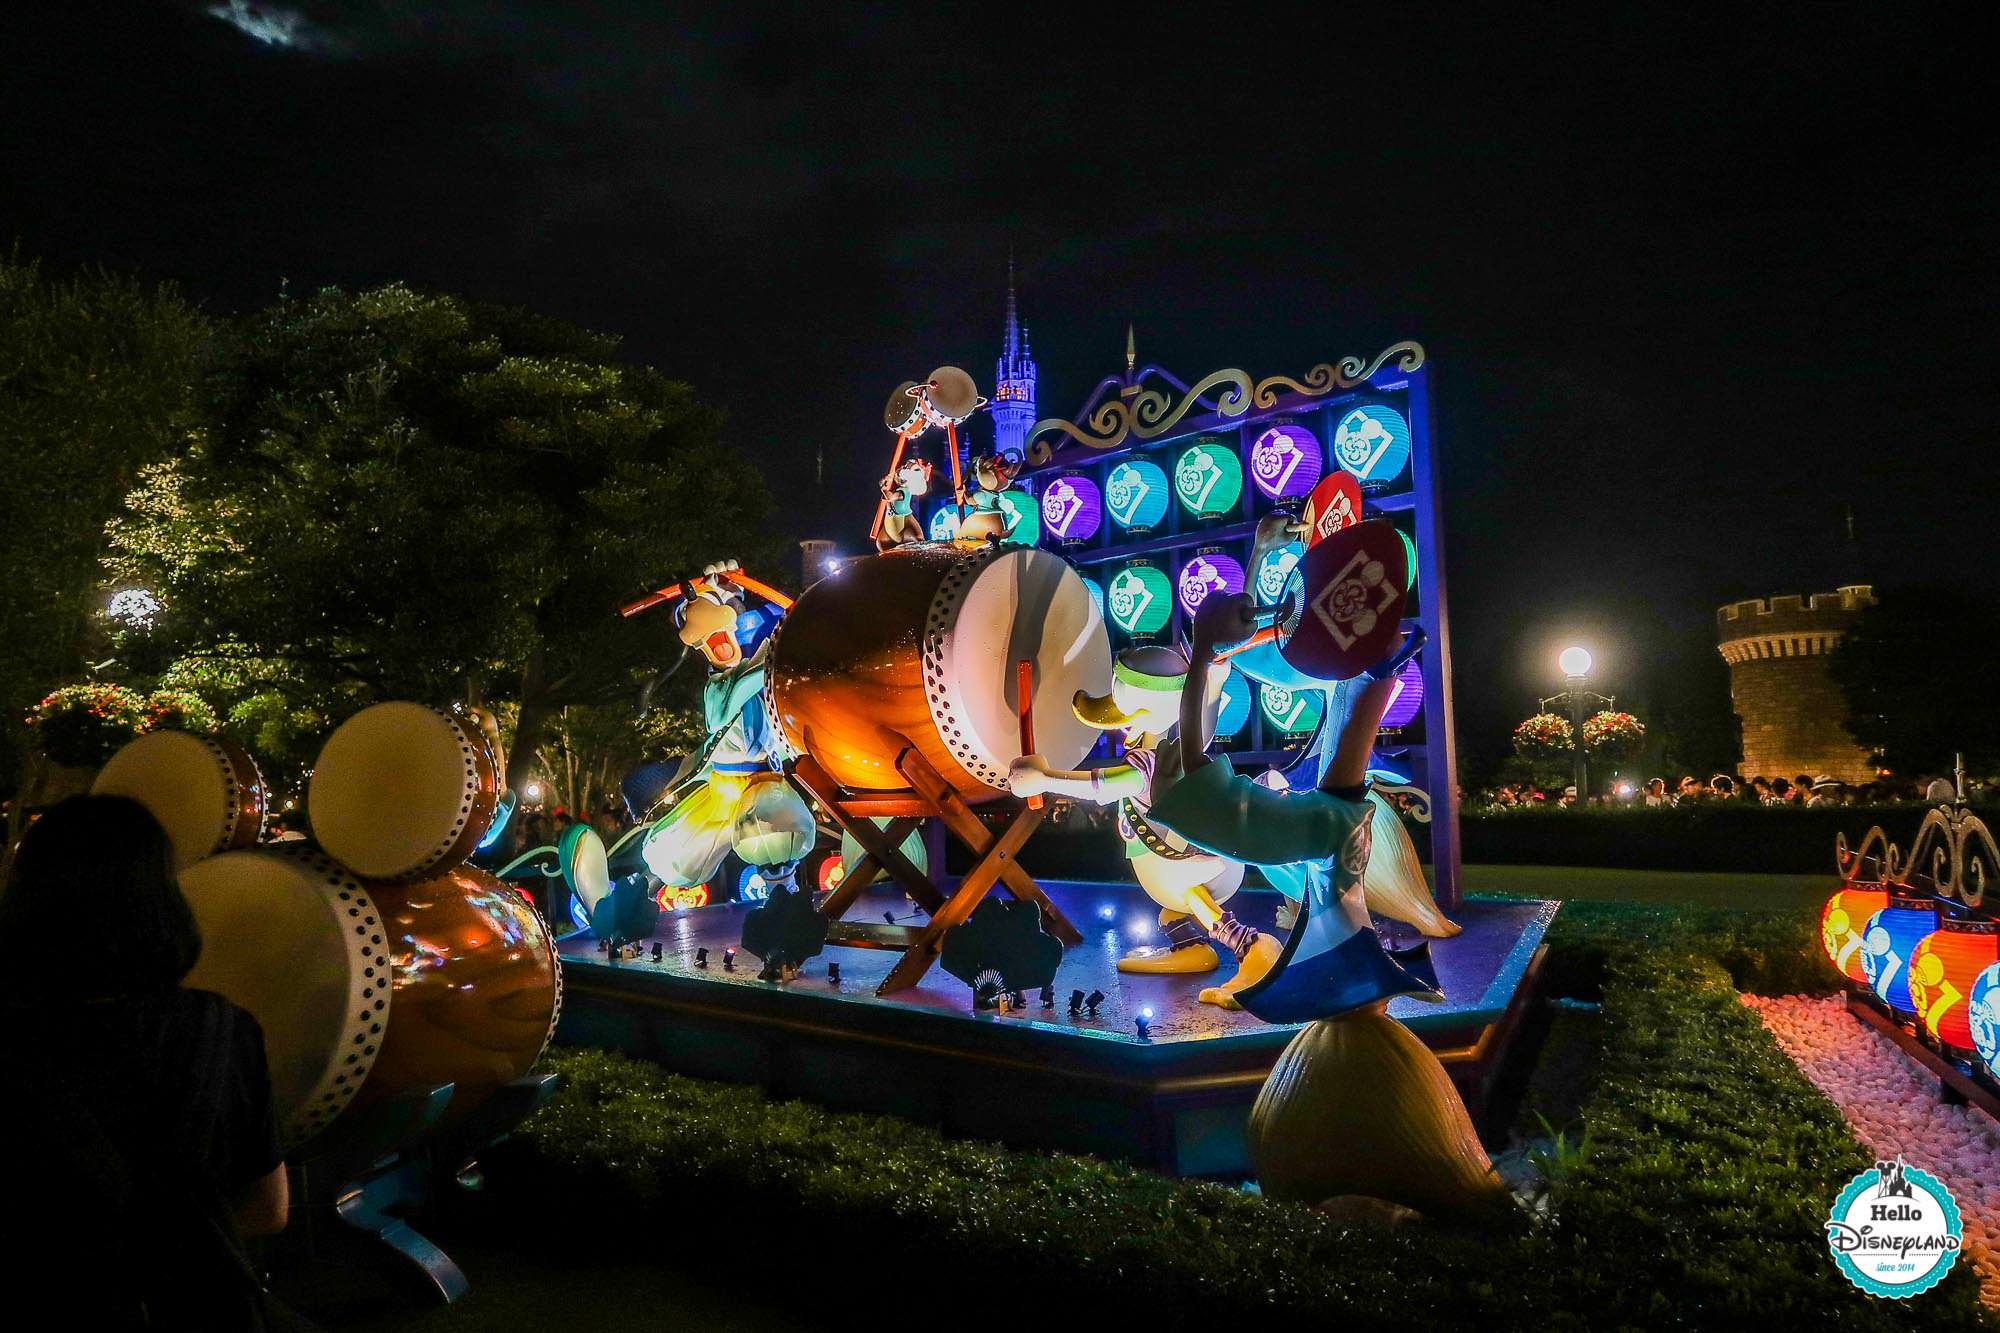 Tokyo Disneyland - Summer 2017